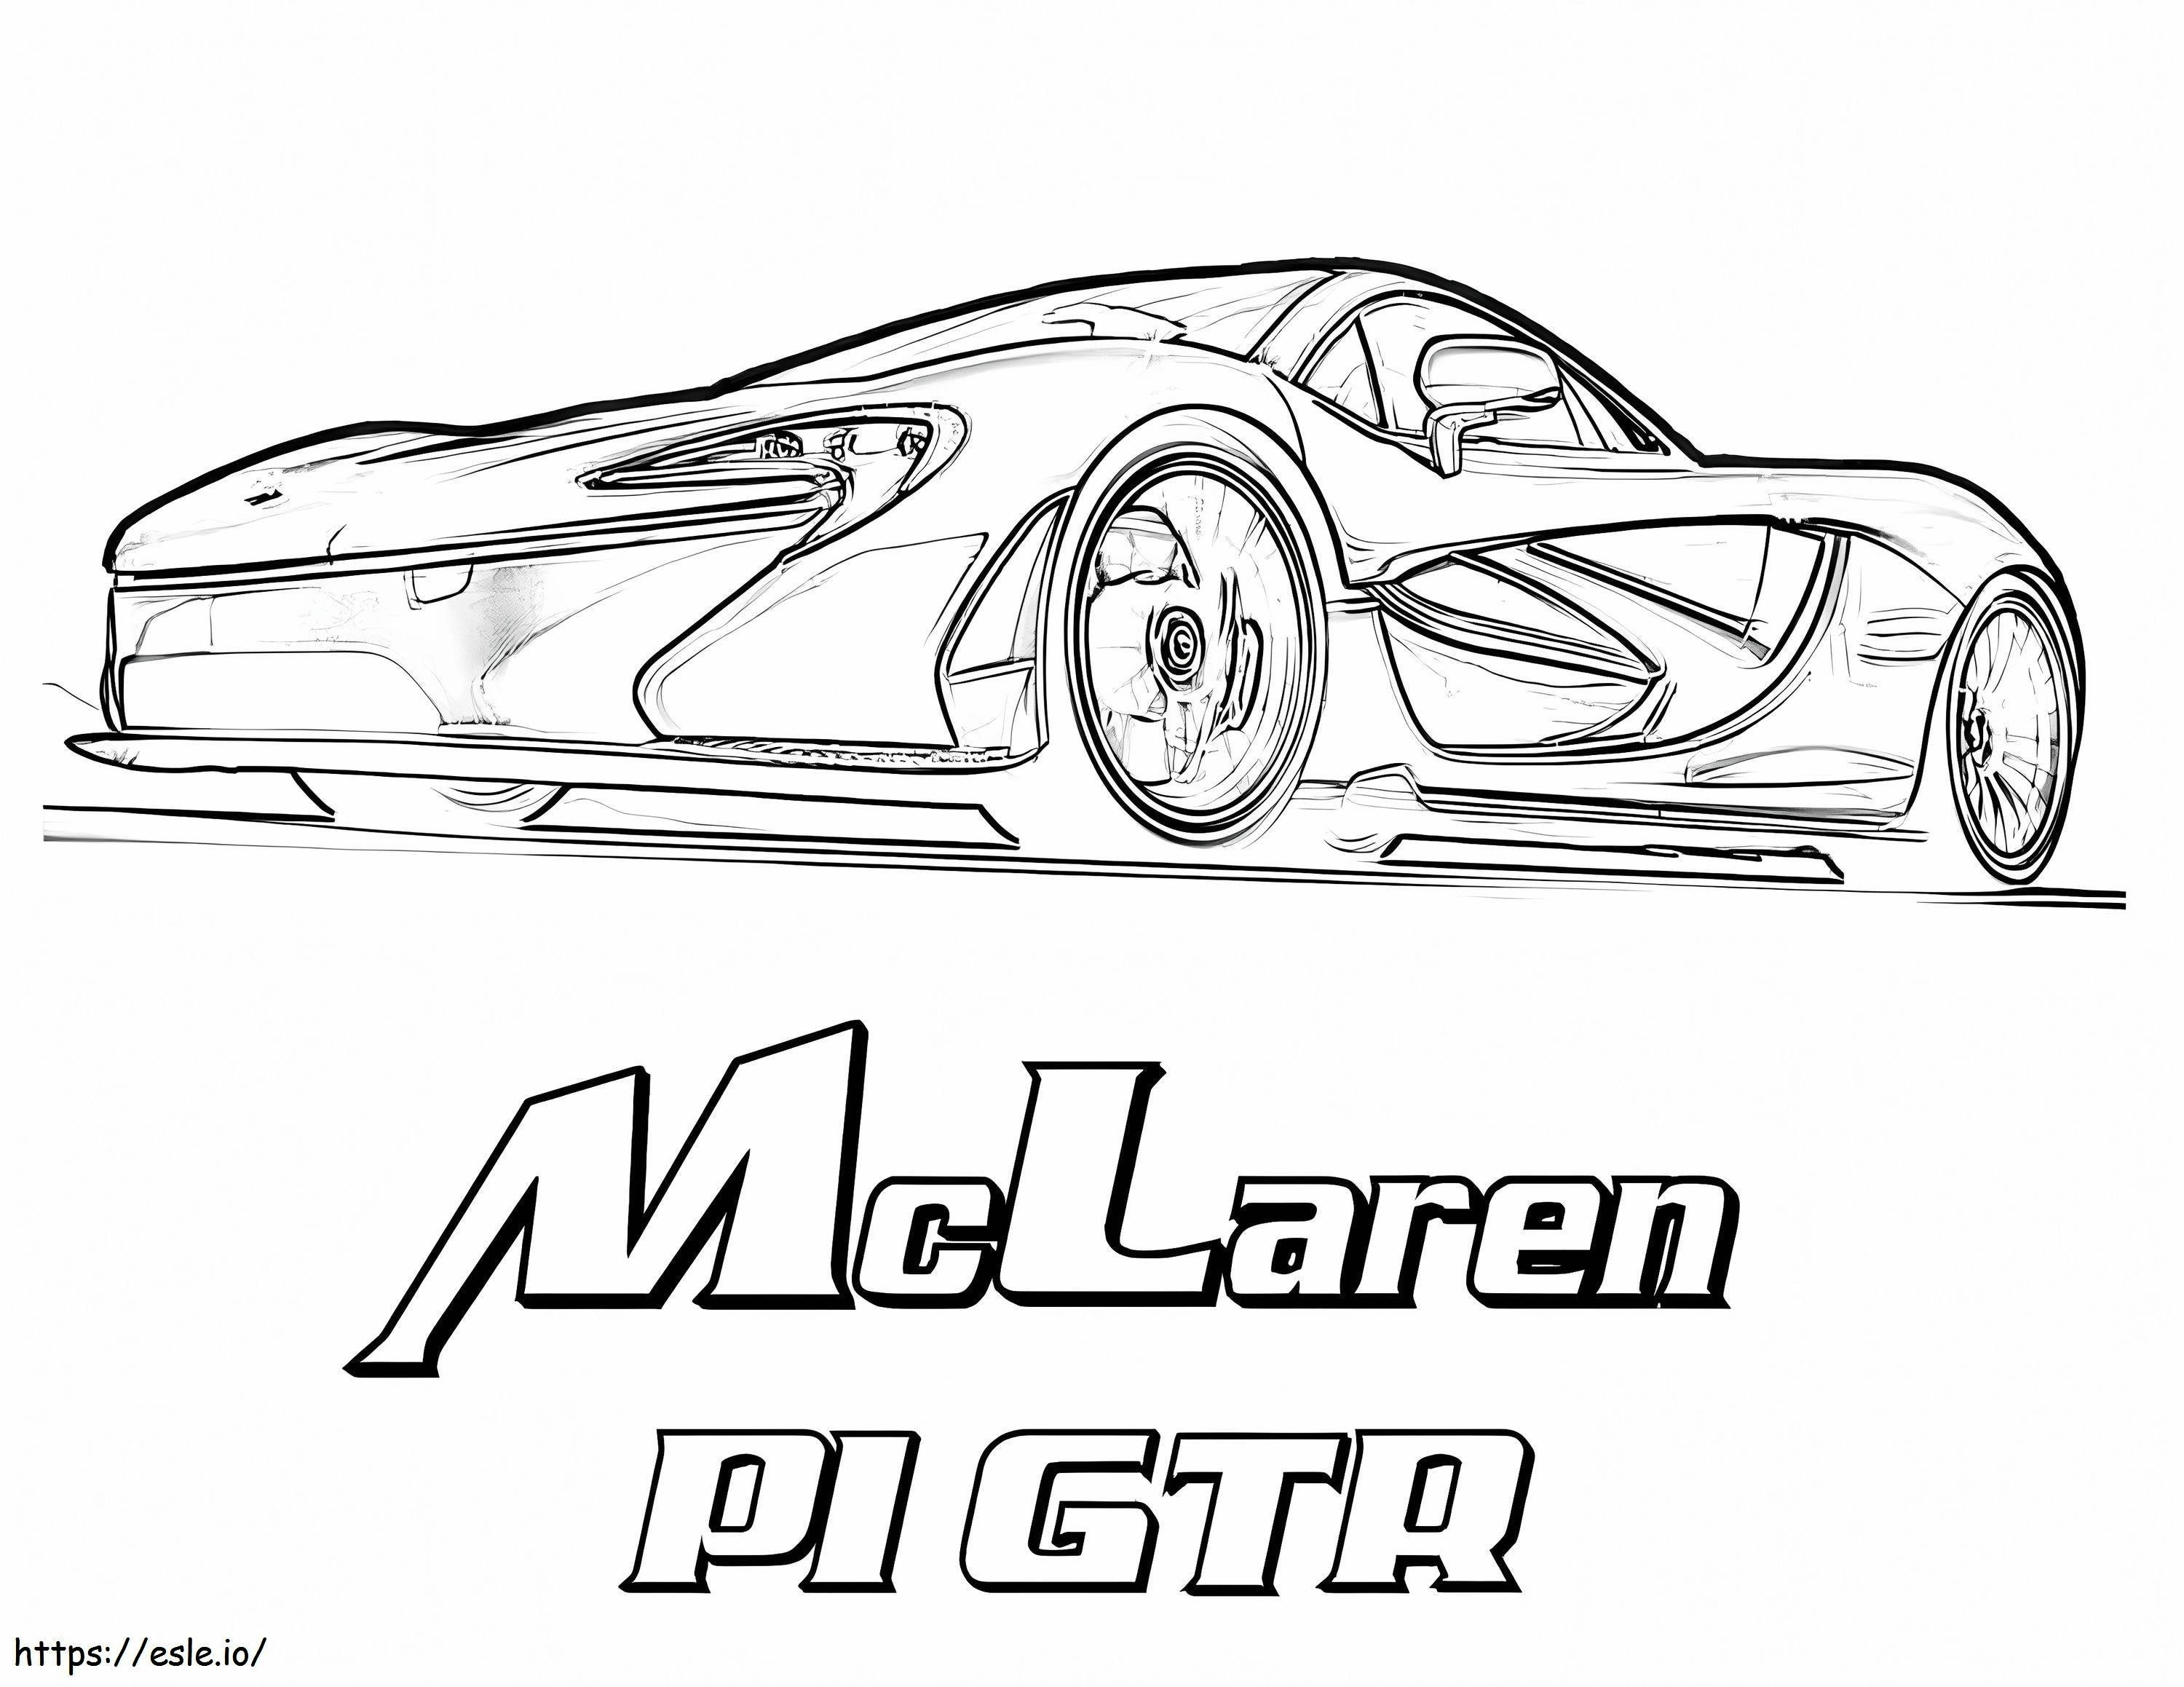 McLaren P1 GTR boyama